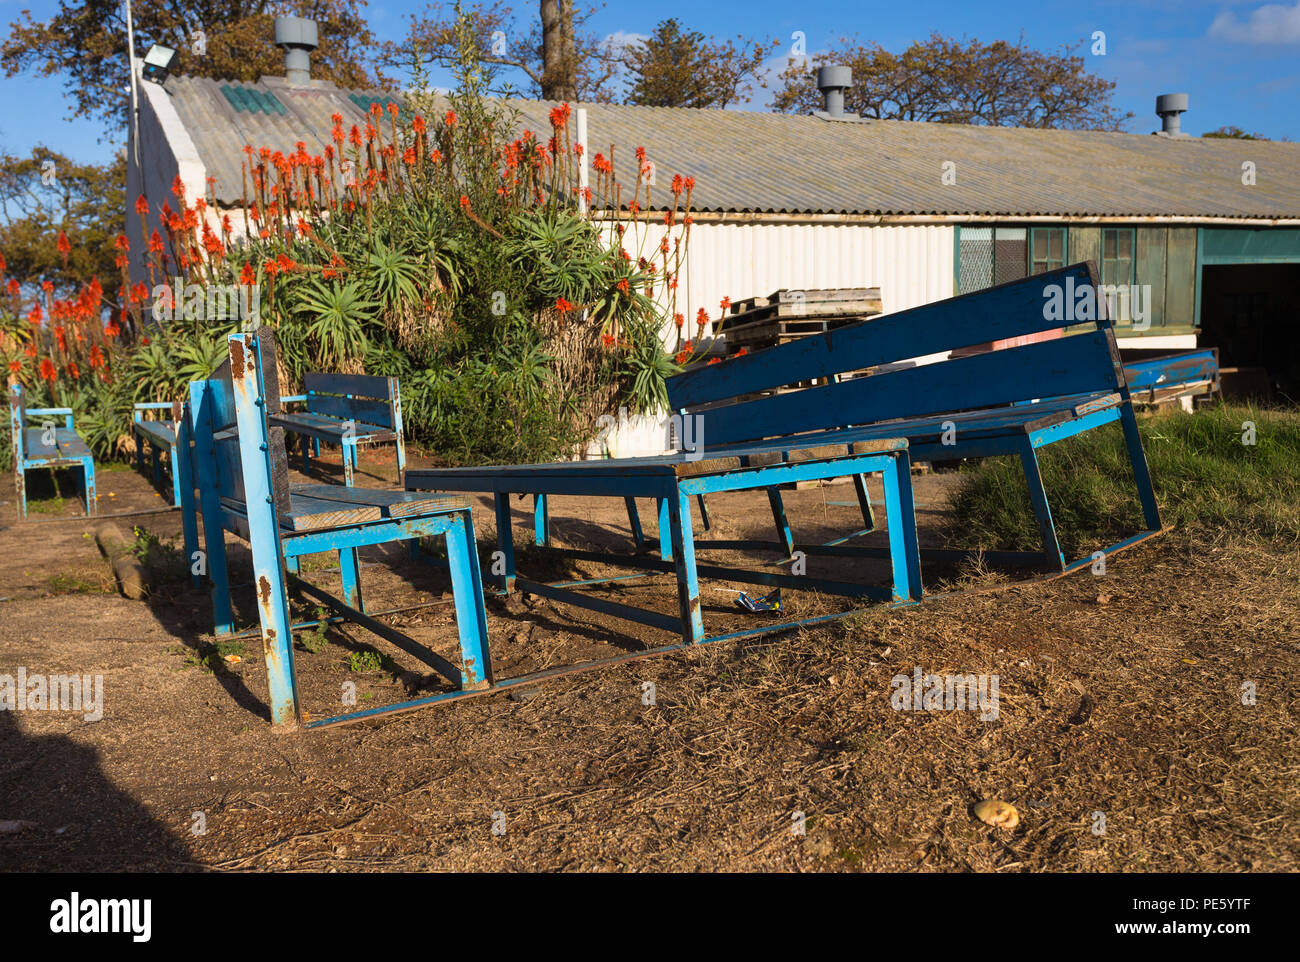 Bancos de madera azul y tabla muy capeado sentados al aire libre junto a un cobertizo en una finca vinícola Foto de stock